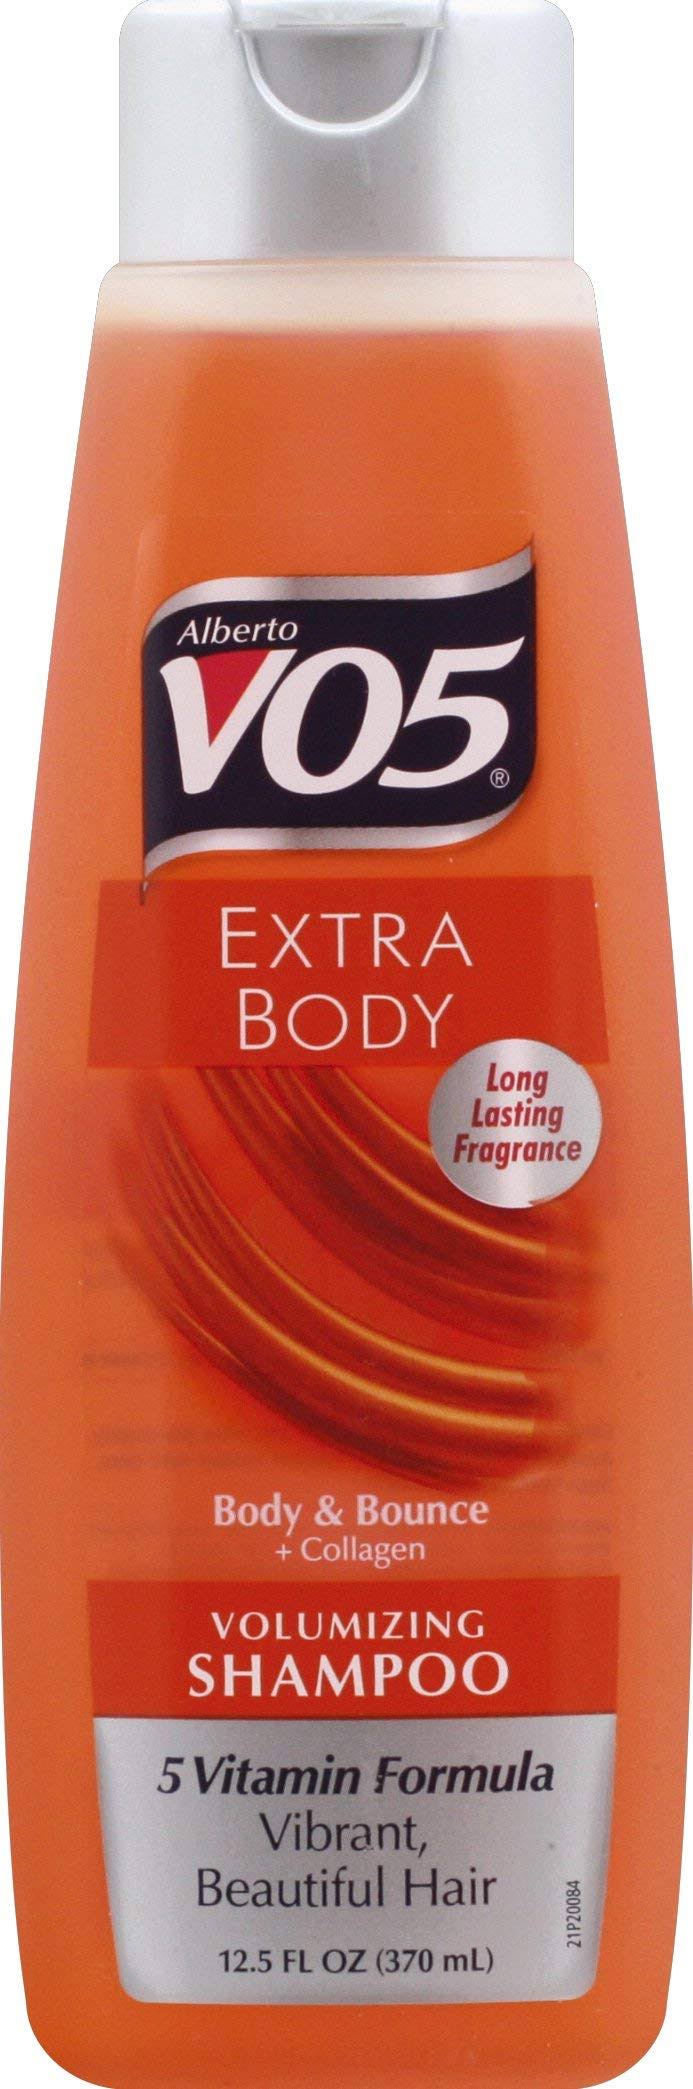 Alberto V05 Extra Body Shampoo - 370ml